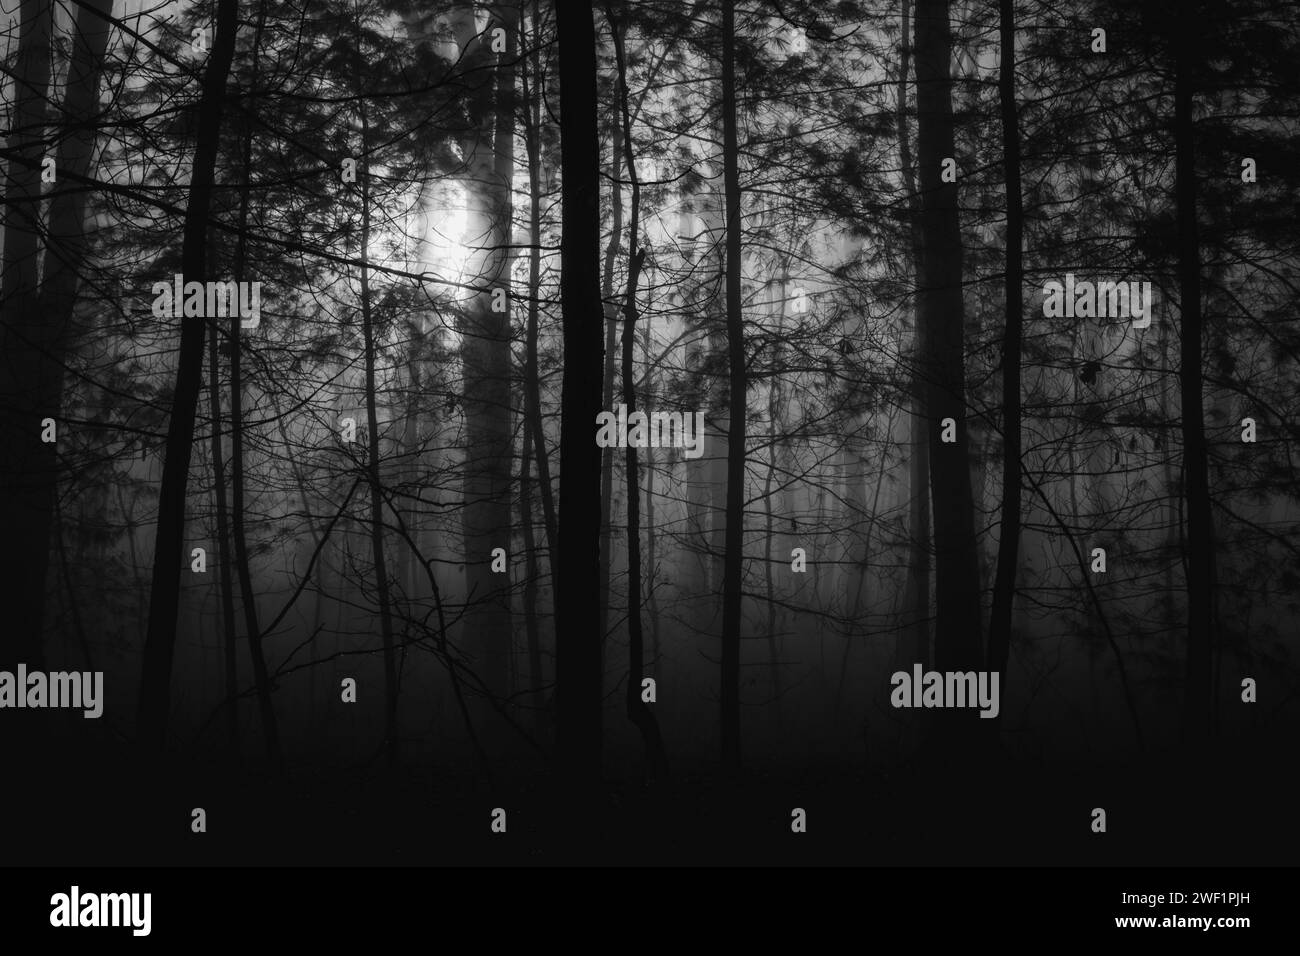 Immagine inquietante della luce che annega nell'oscurità degli alberi e della nebbia. Foto Stock